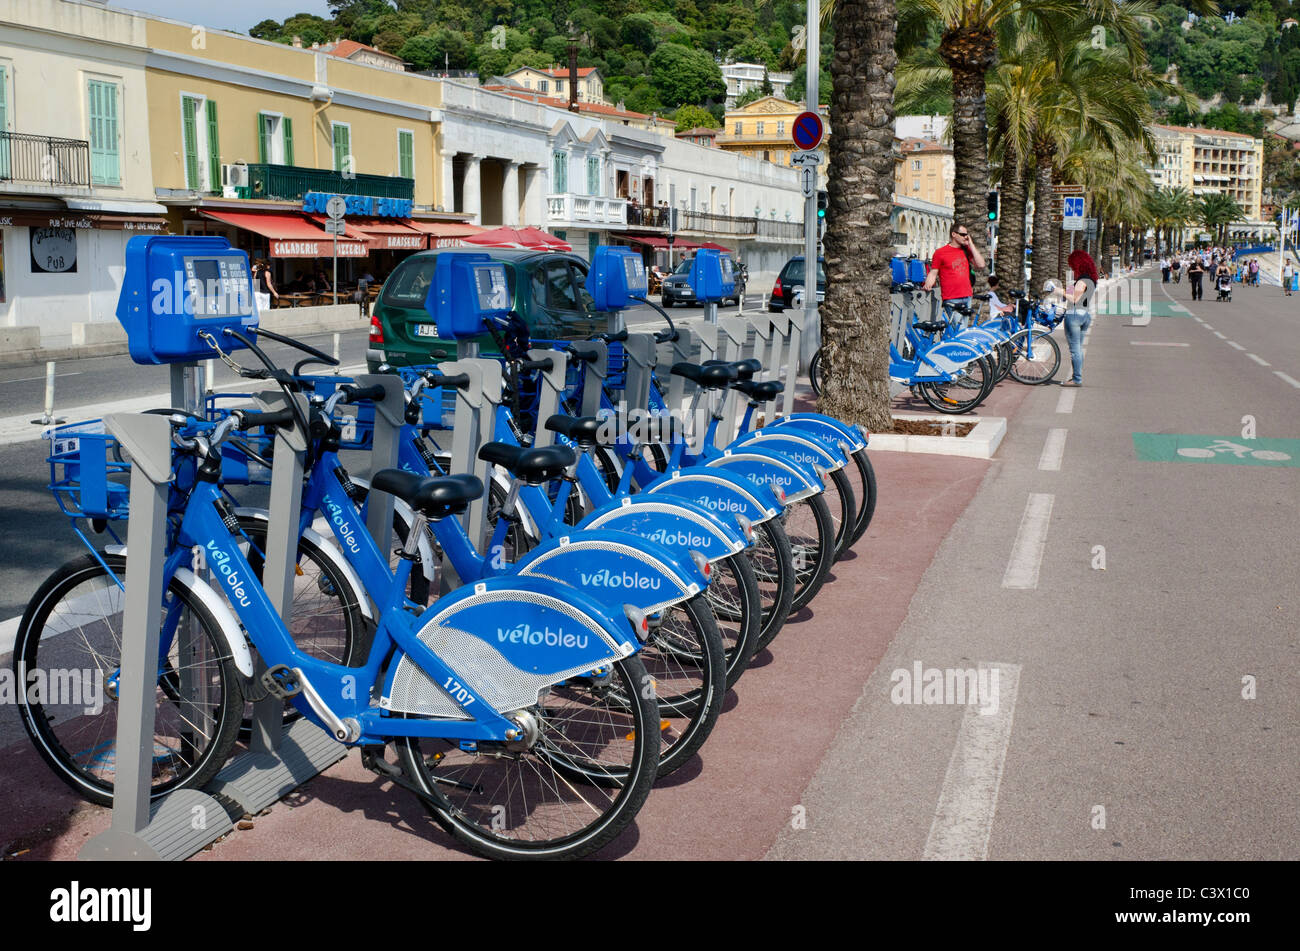 Possibilità di noleggio bici opportunità in Costa Azzurra includono il Velo Bleu sistema operante in città di Nizza Foto Stock